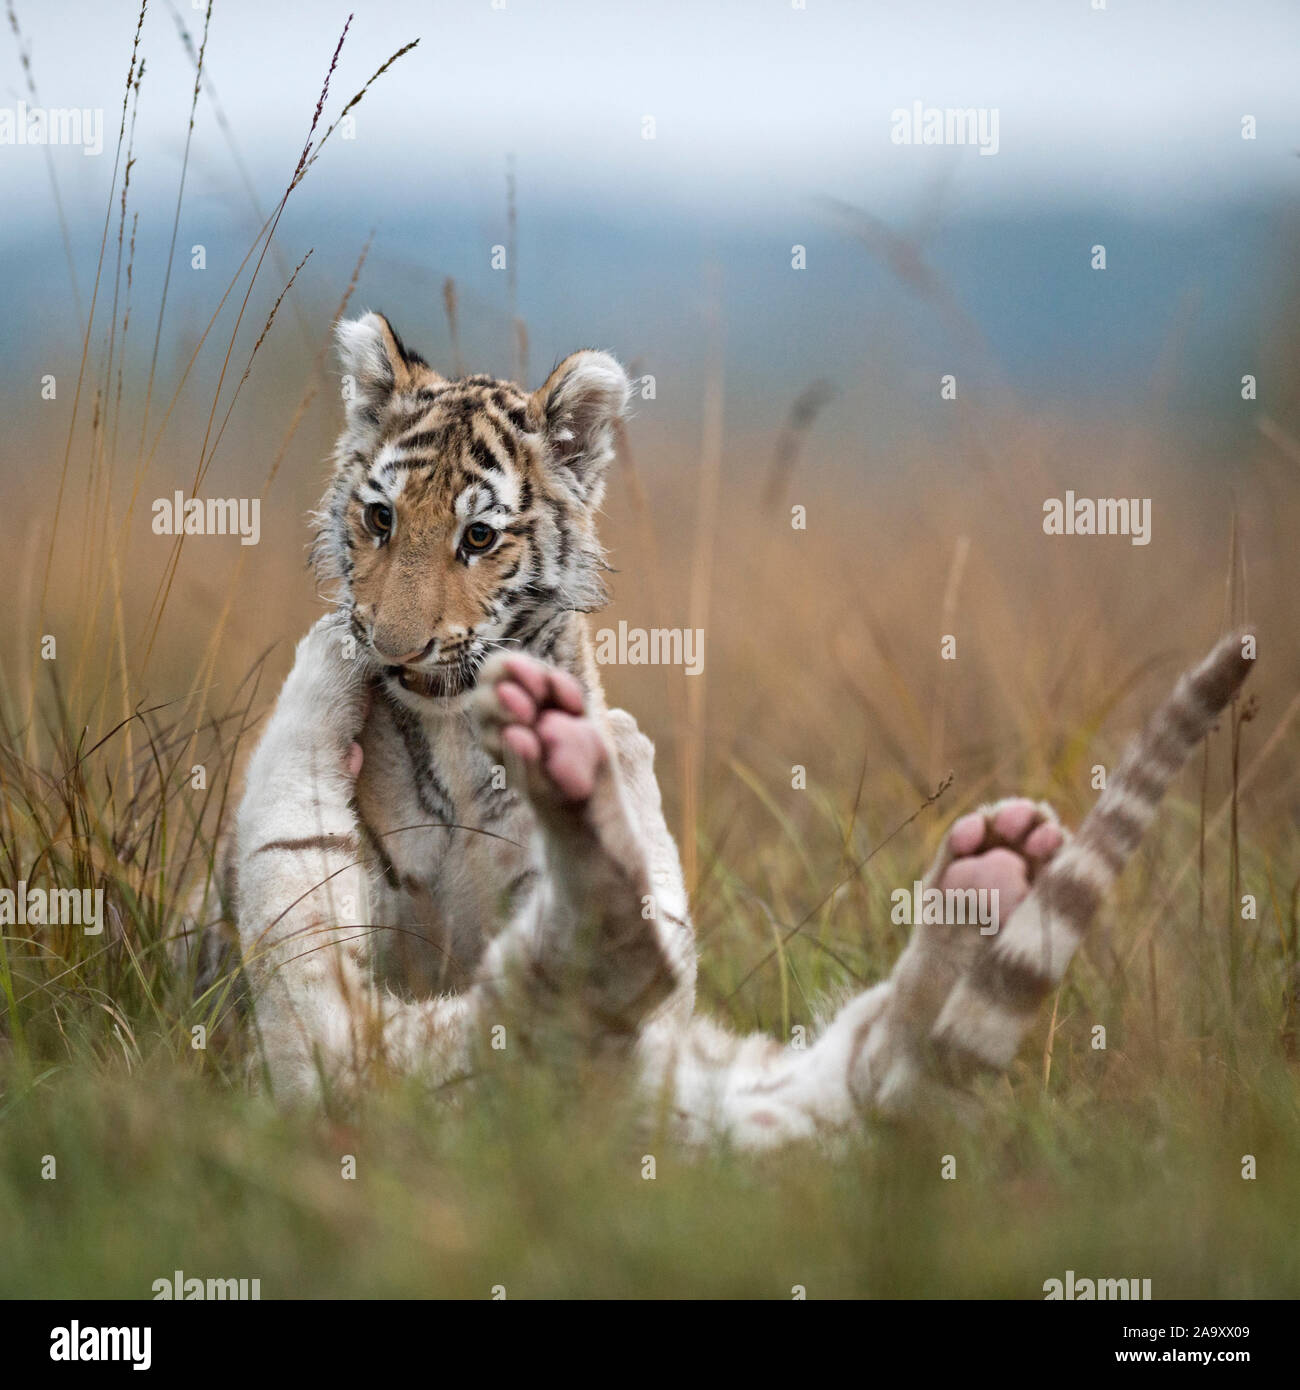 Royal Bengal Tiger (Panthera tigris), jungen Geschwister, Spielen, Ringen, romging im hohen Gras, typischen, natürlichen Umgebung, sieht lustig. Stockfoto